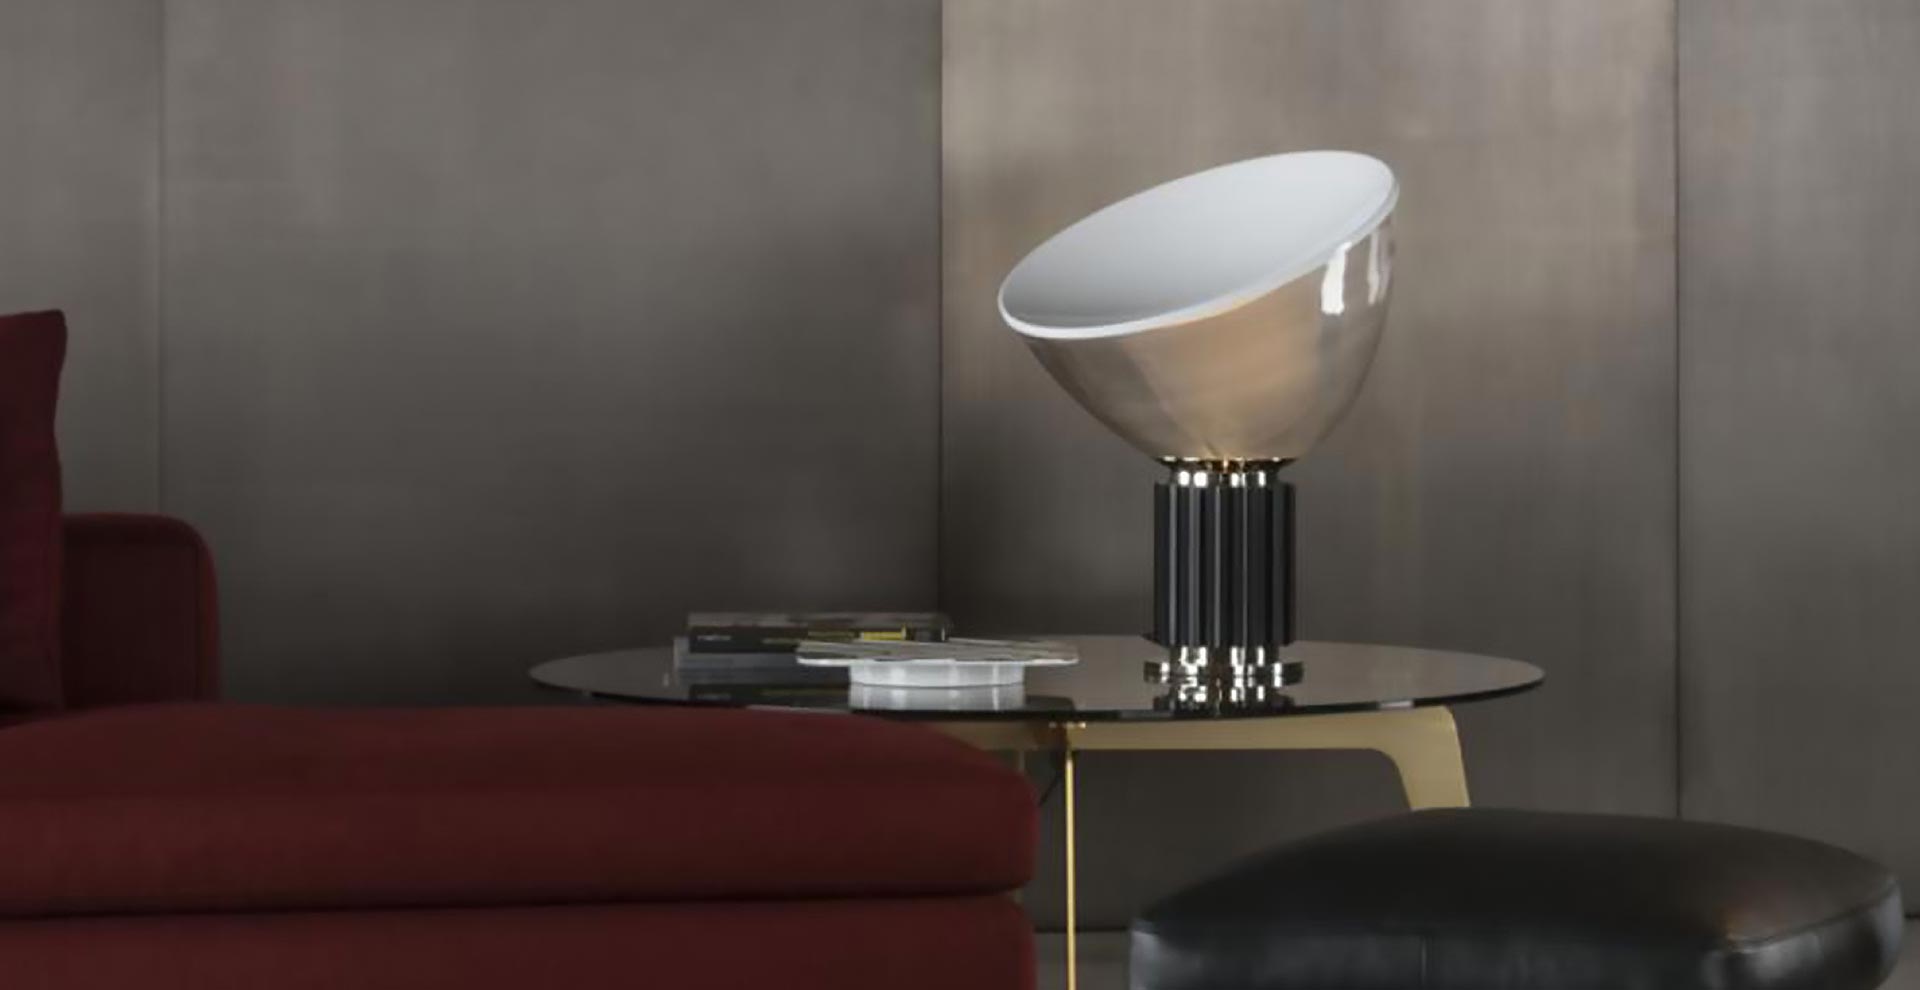 Minimalistyczna lampa stołowa, której klosz przypomina wygiętą misę stoi na stoliku bocznym obok bordowej sofy. Pomieszczenie jest urządzone w nowoczesnym, brutalnym stylu.